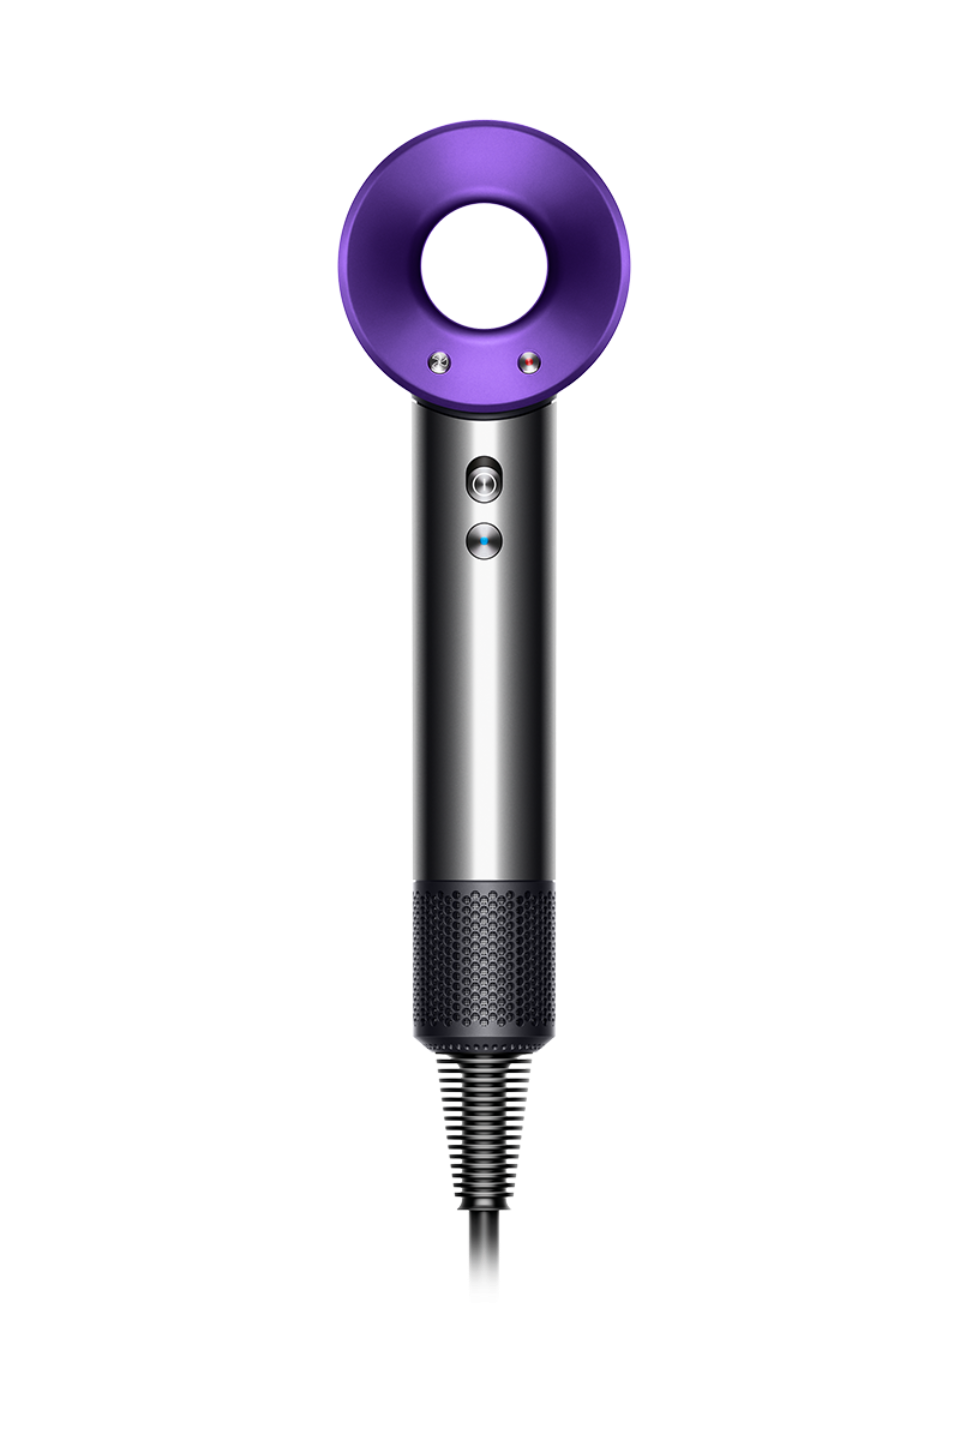 Dyson Supersonic™ hair dryer Black Purple| Dyson NZ